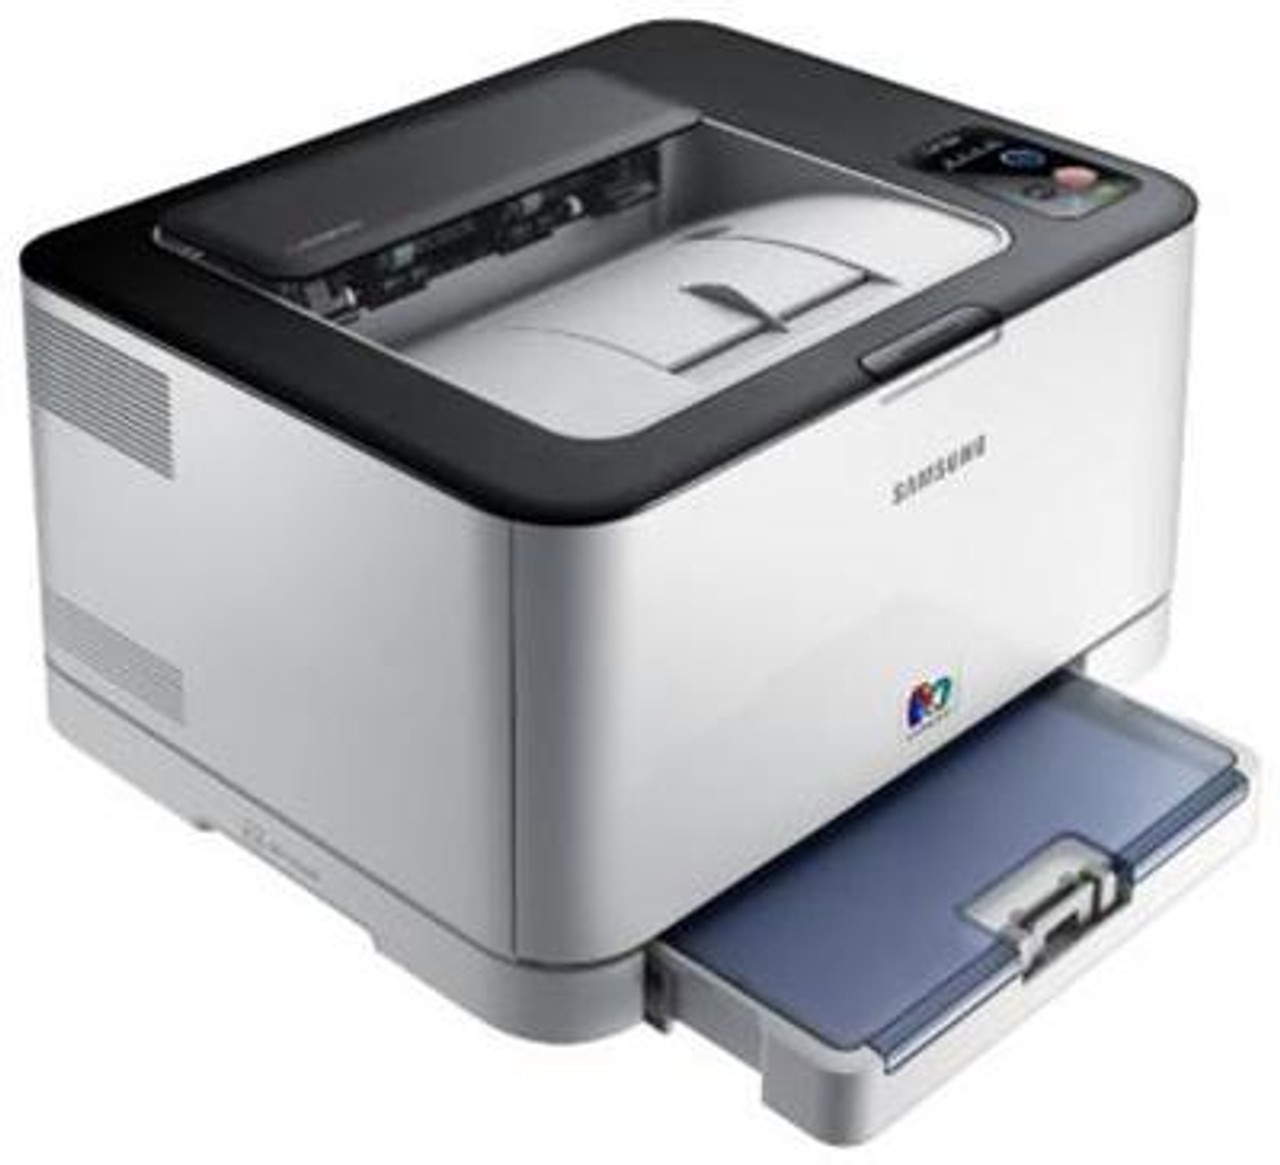 CLP-320 - Samsung CLP-320 Color Laser Printer (Refurbished)